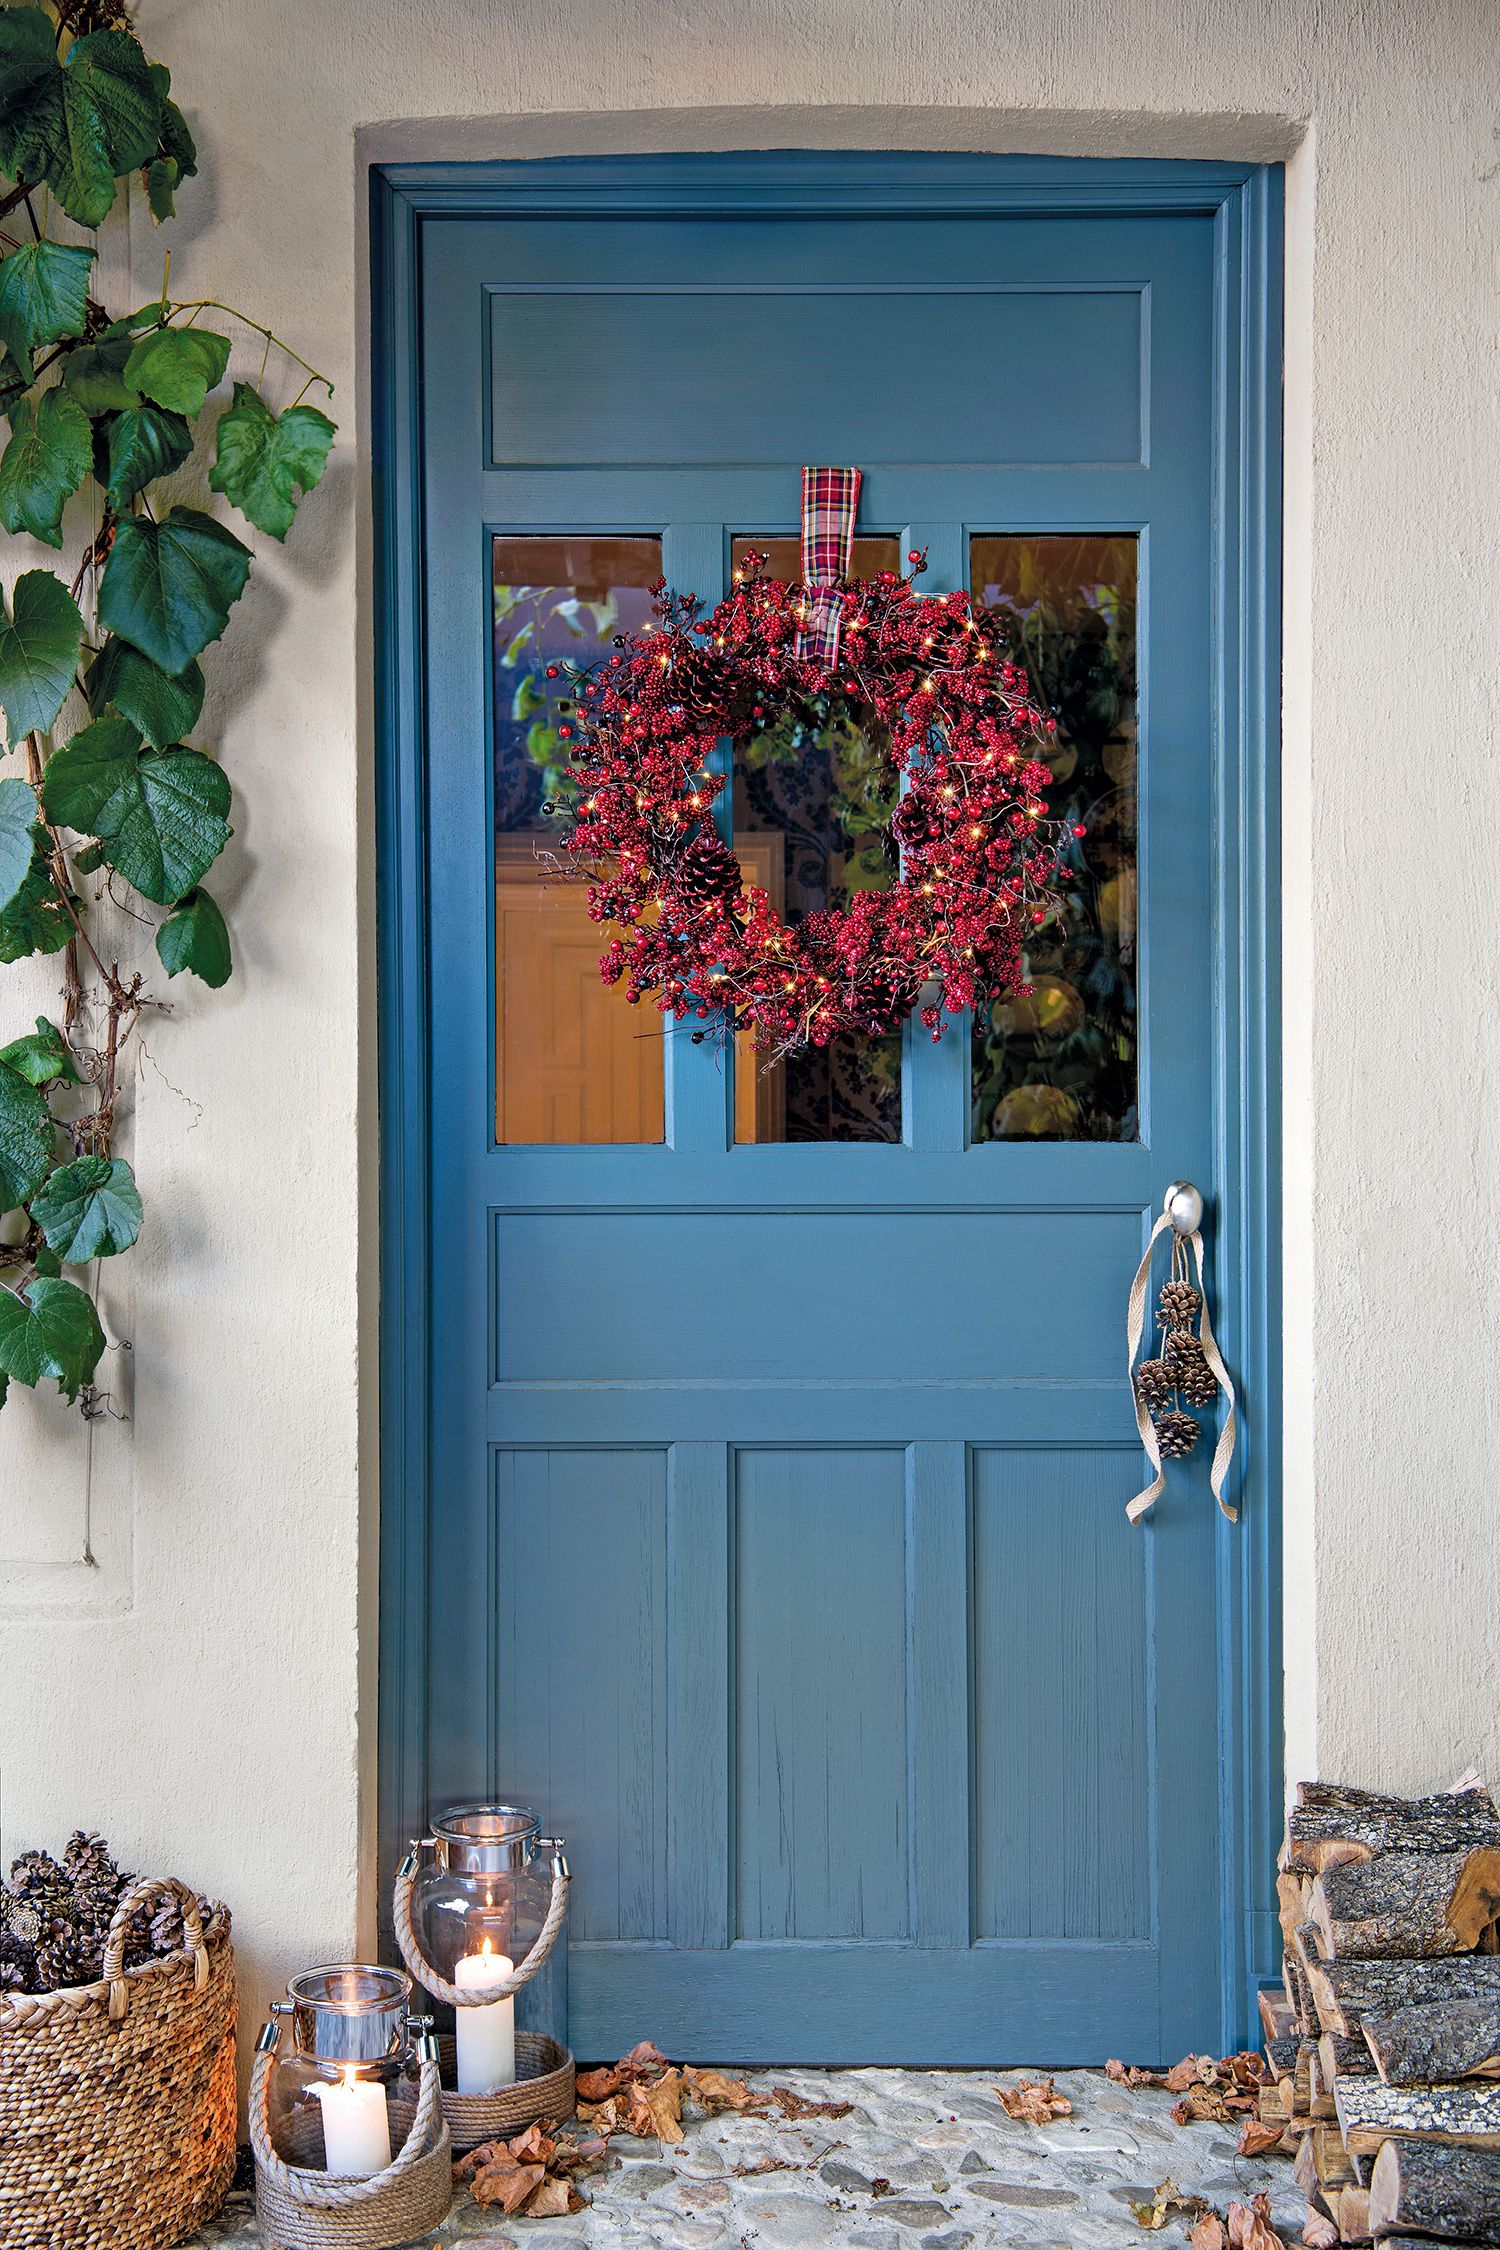 55 ideas con mucho estilo para decorar la puerta en Navidad